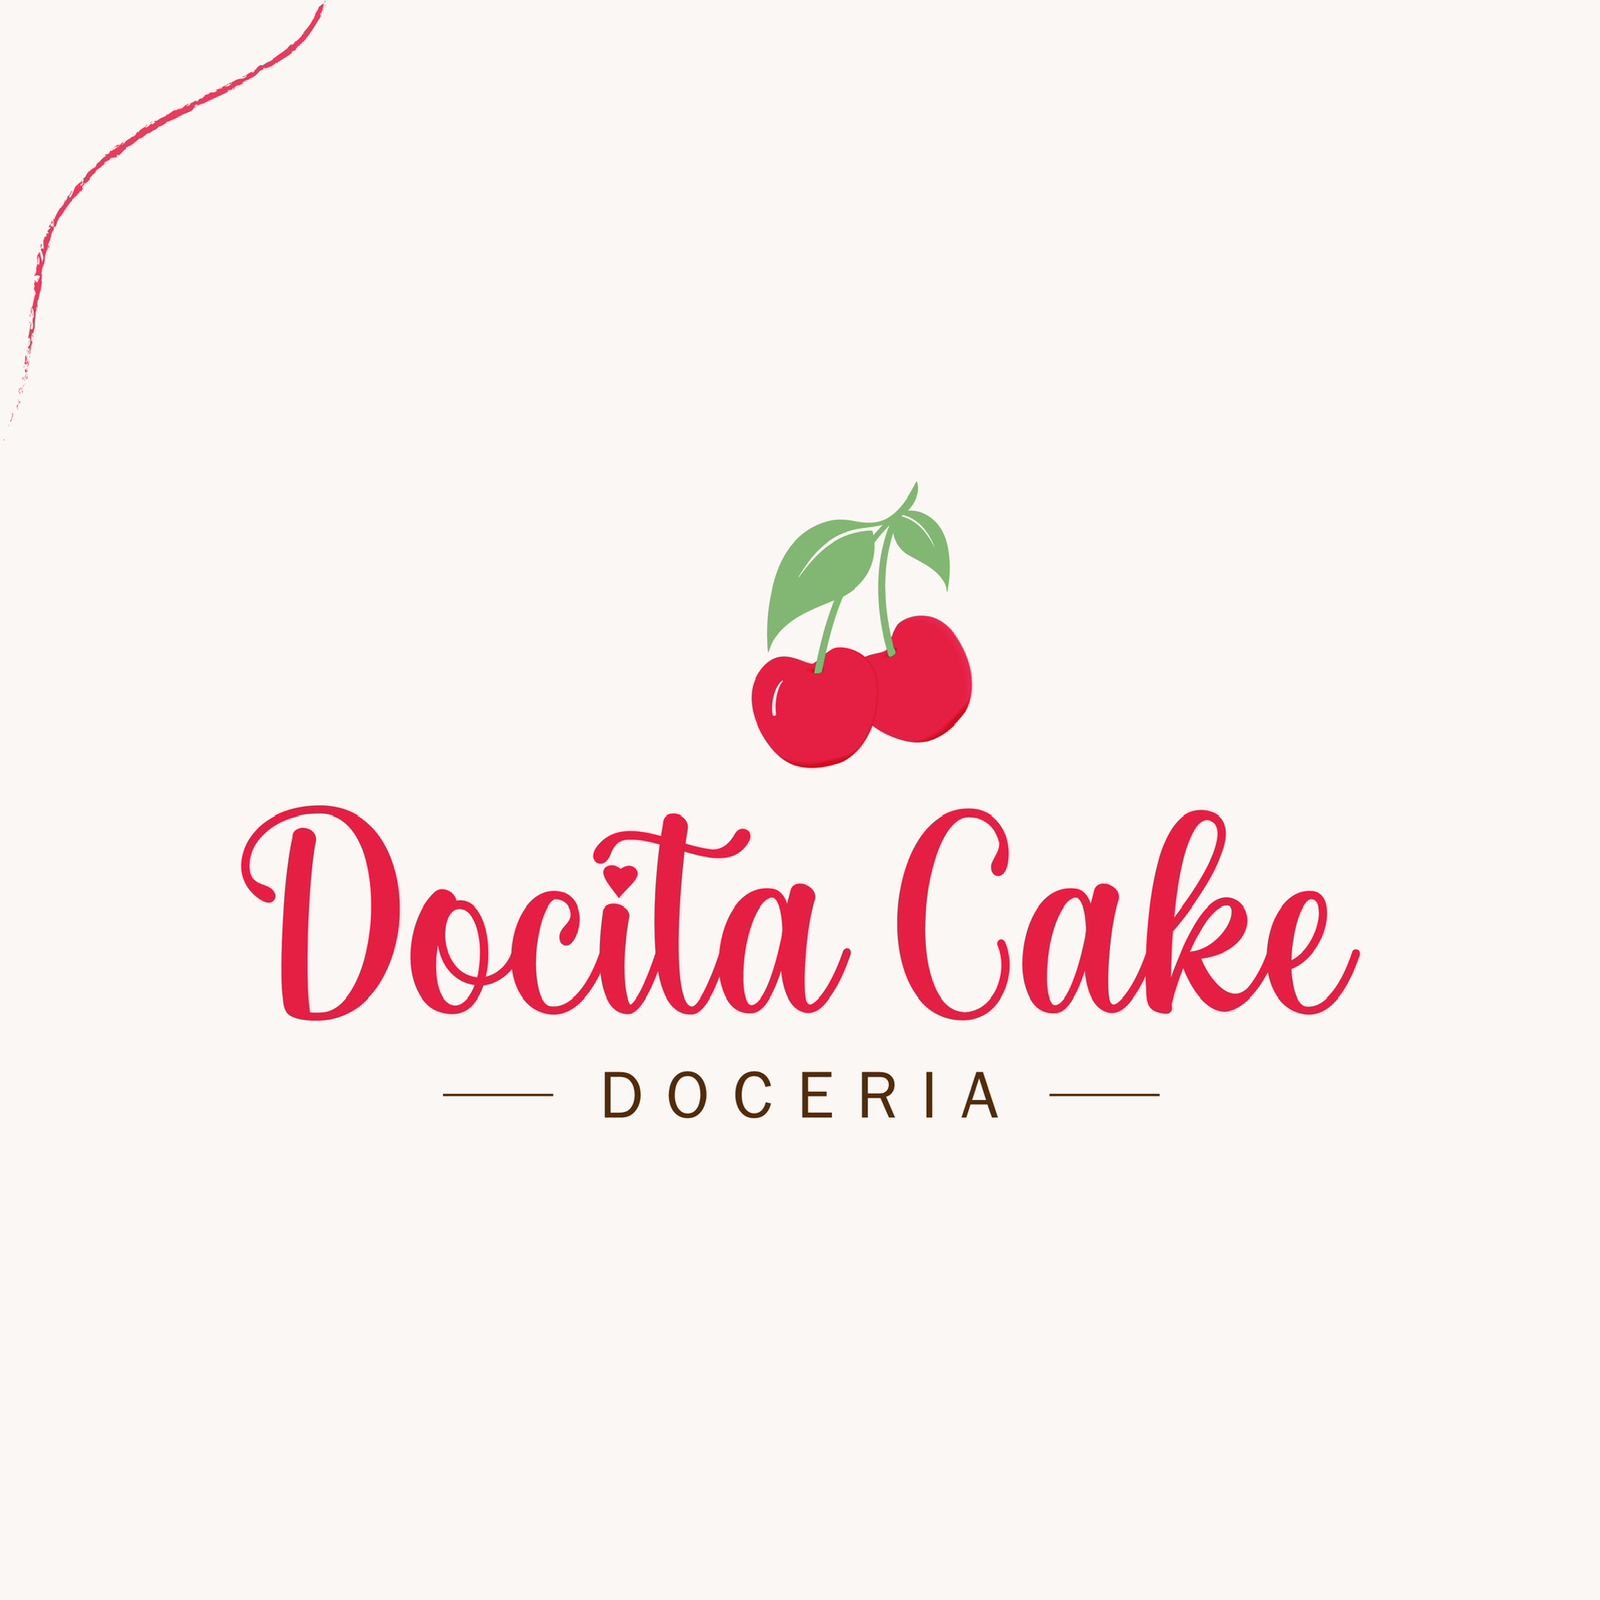 Docita Cake